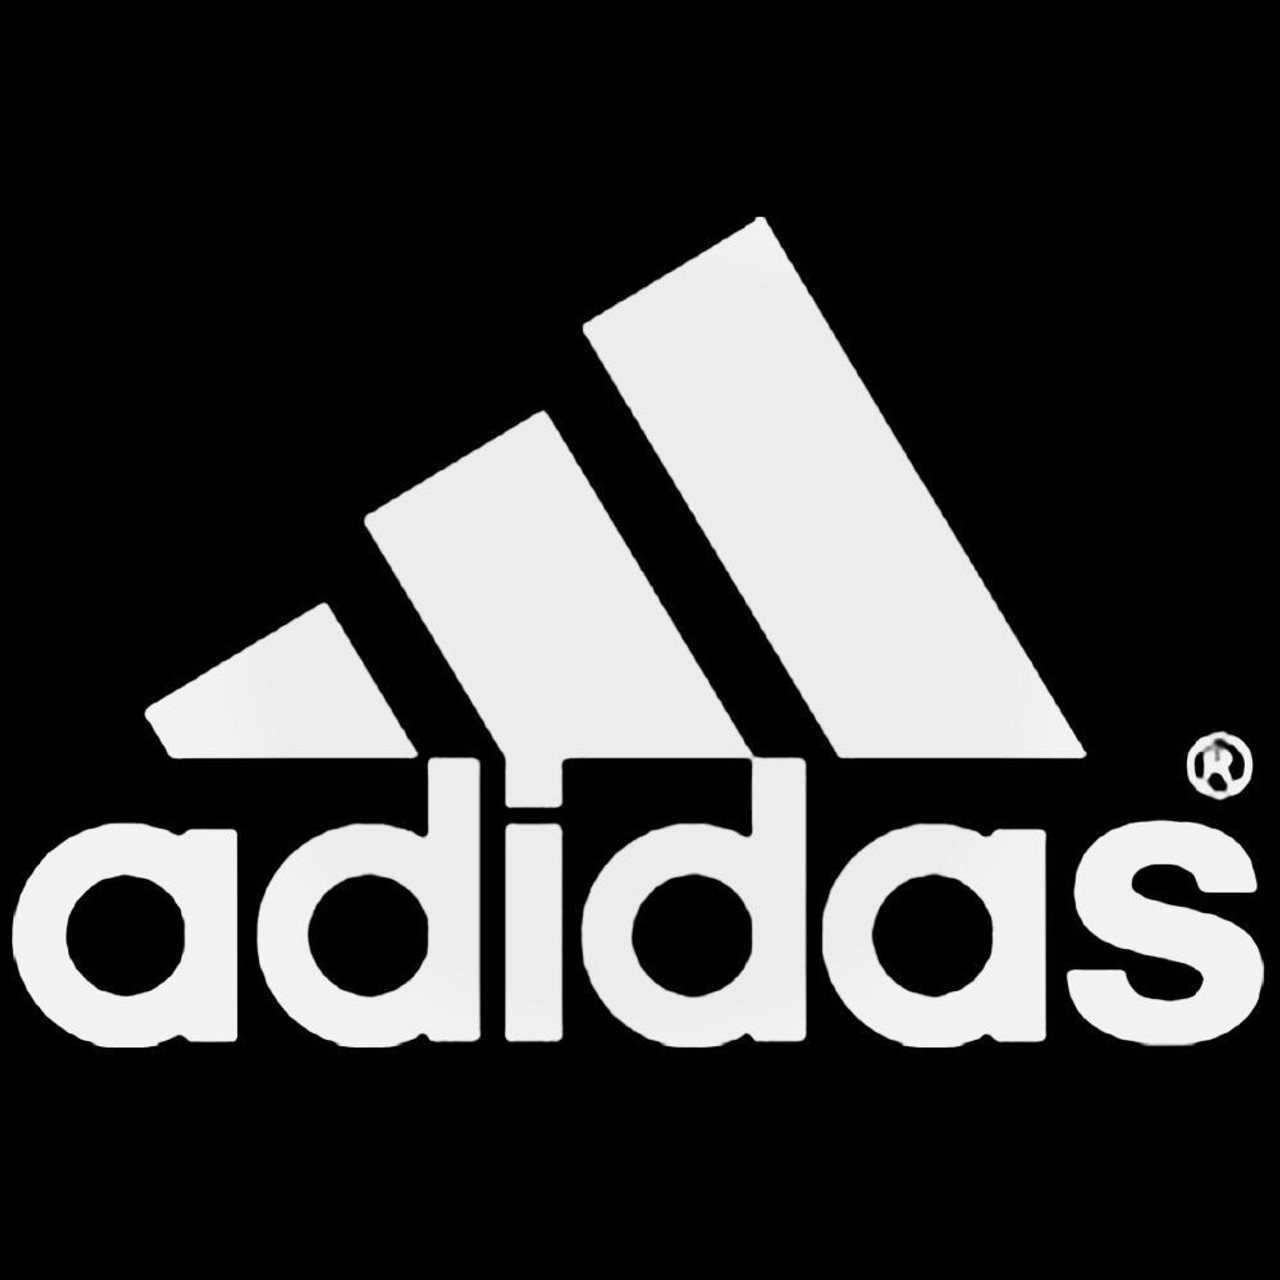 adidas image logo